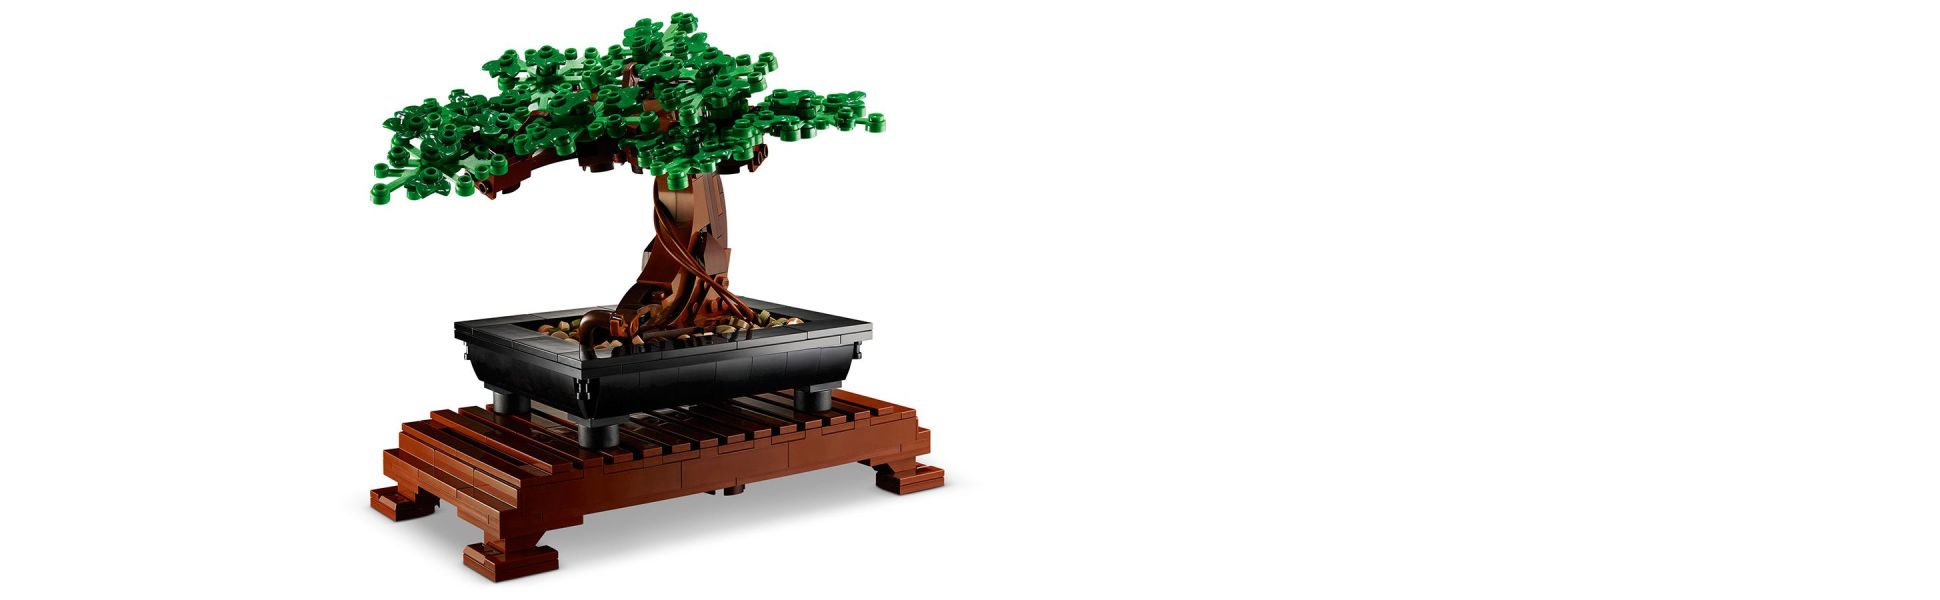 LEGO Bonsai e Flower bouquet, annunciati ufficialmente i set della  Botanical Collection